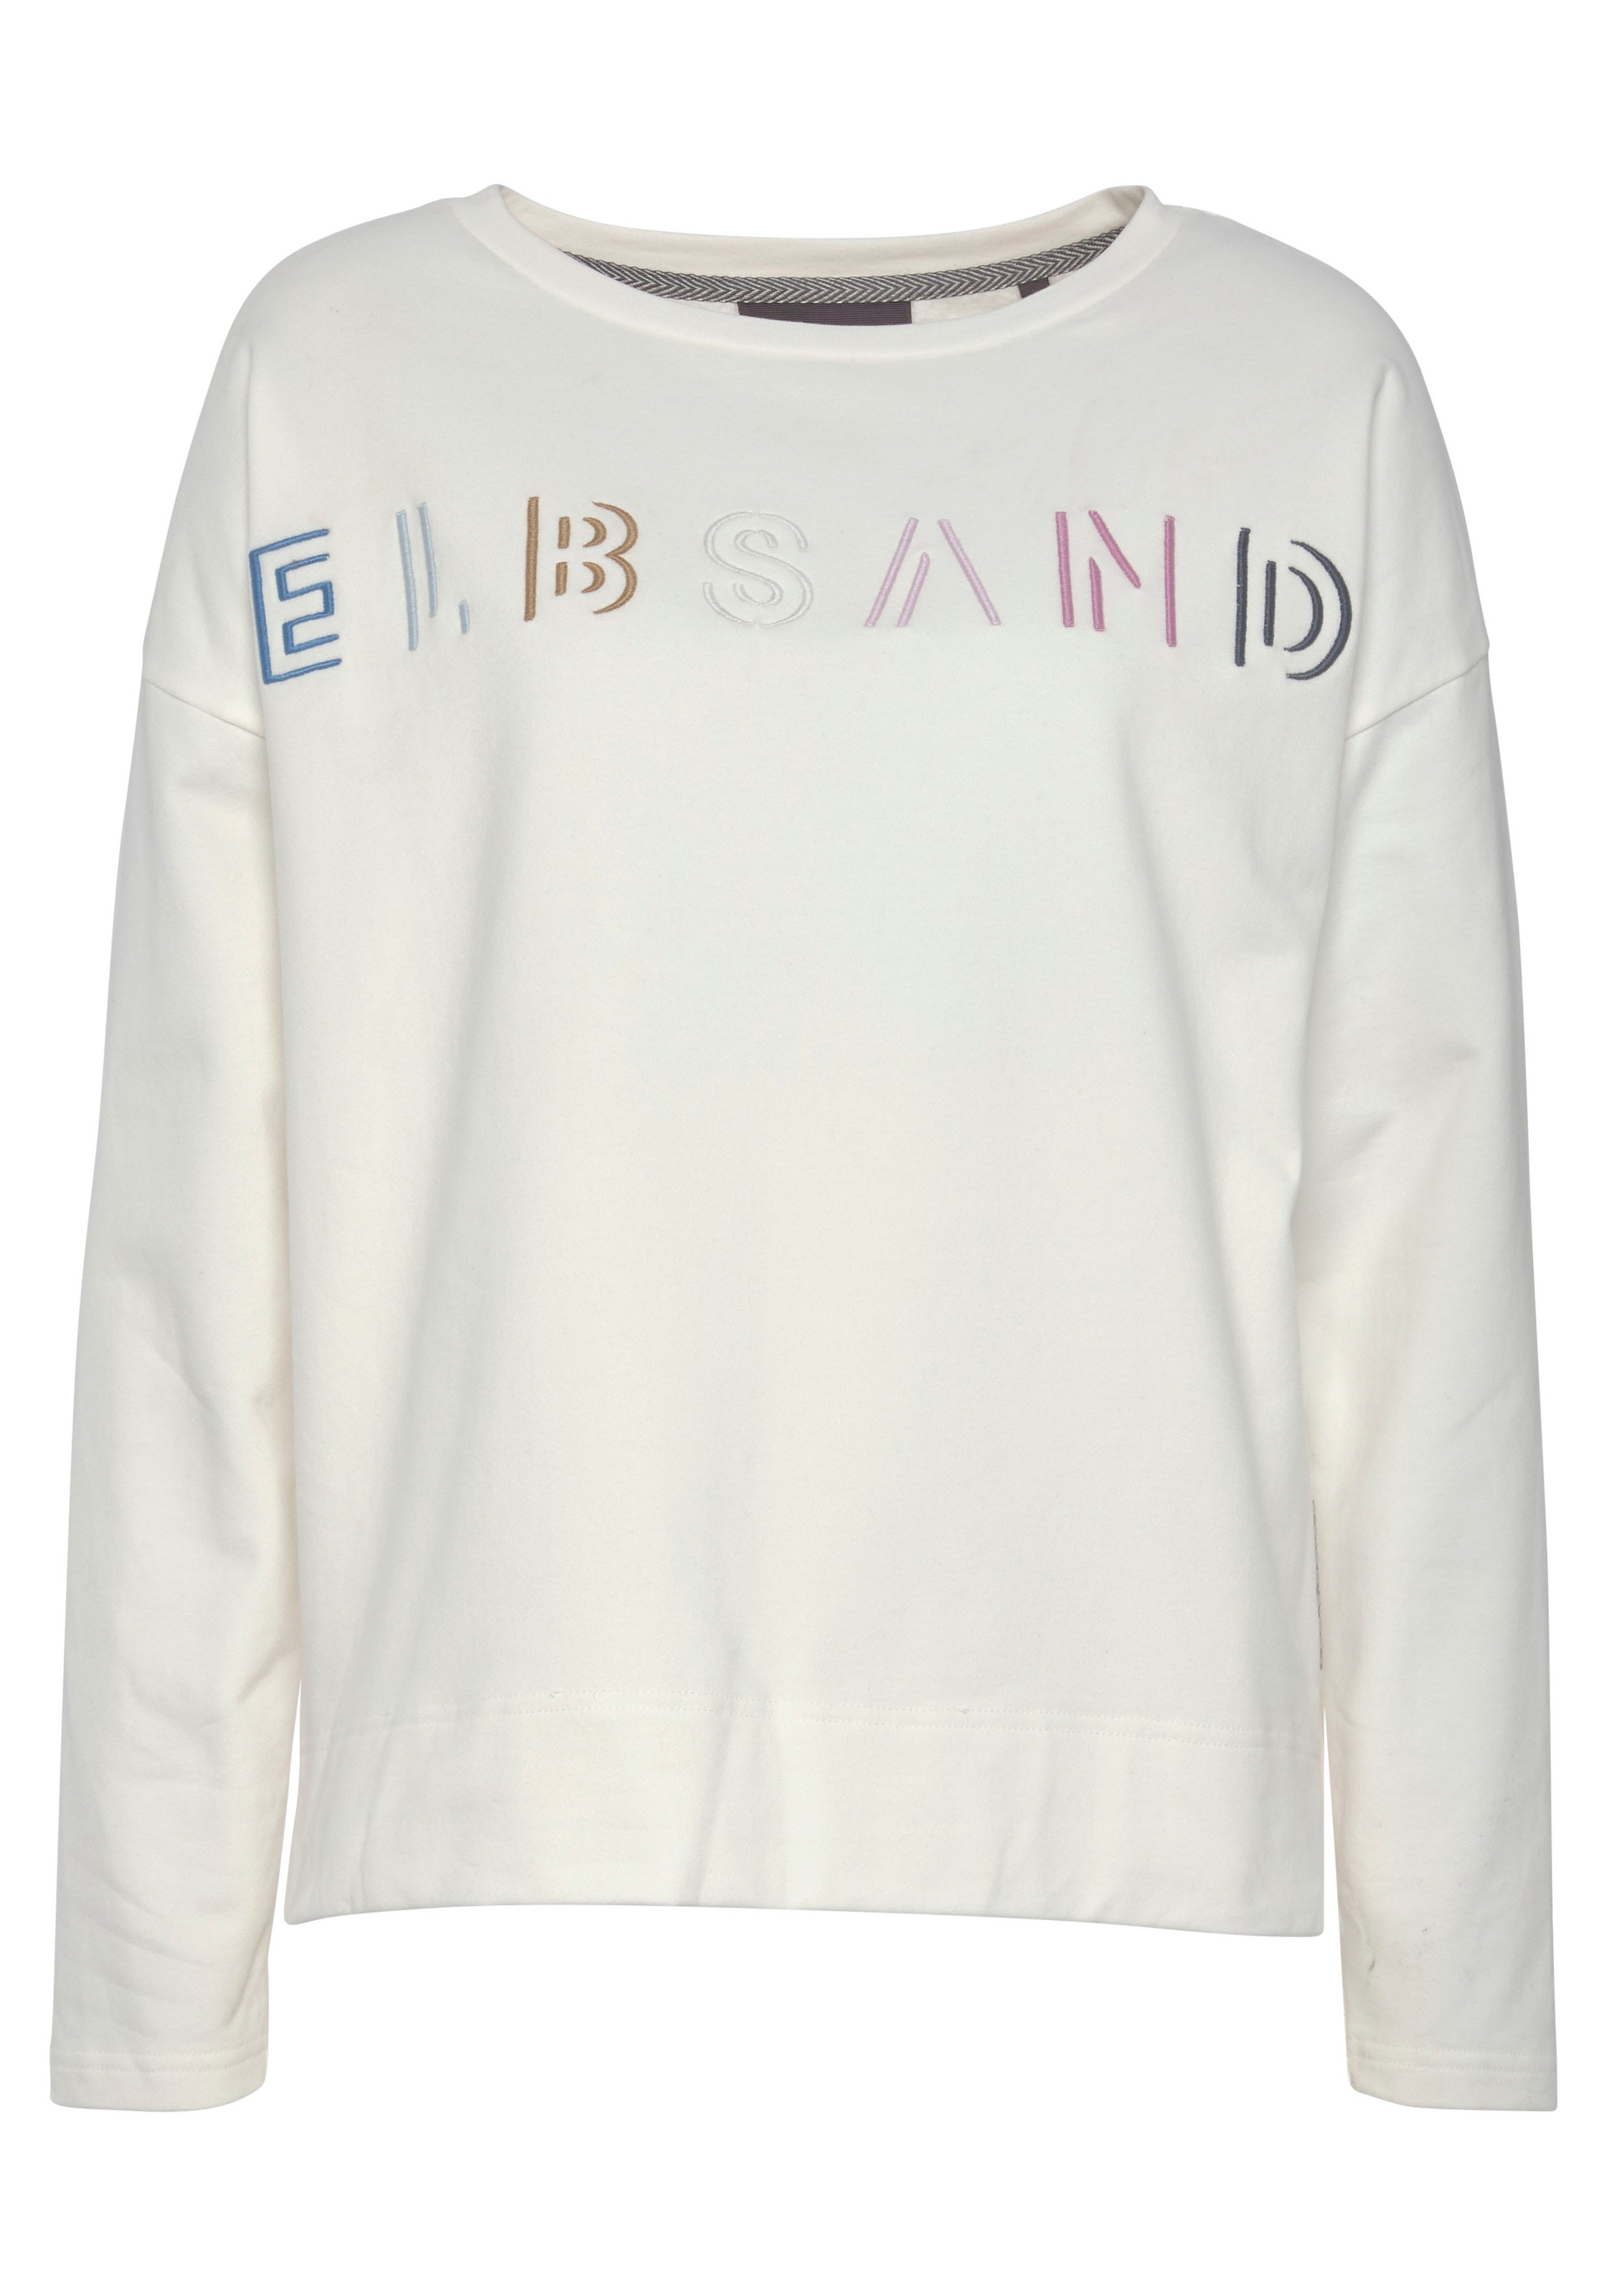 Elbsand Sweatshirt, mit Logostickerei vorne, lässige Passform, sportlich-casual